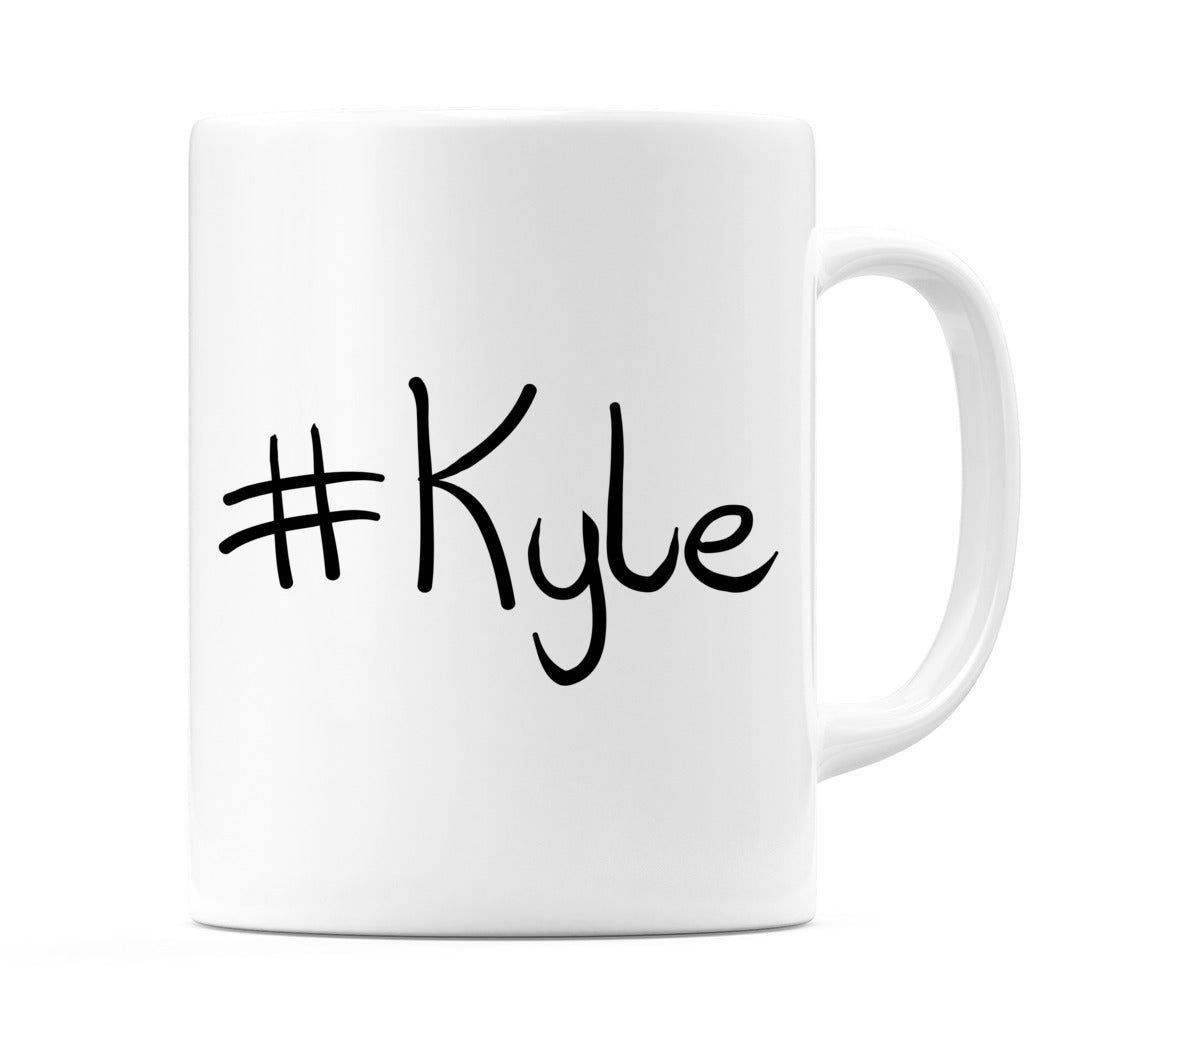 #Kyle Mug